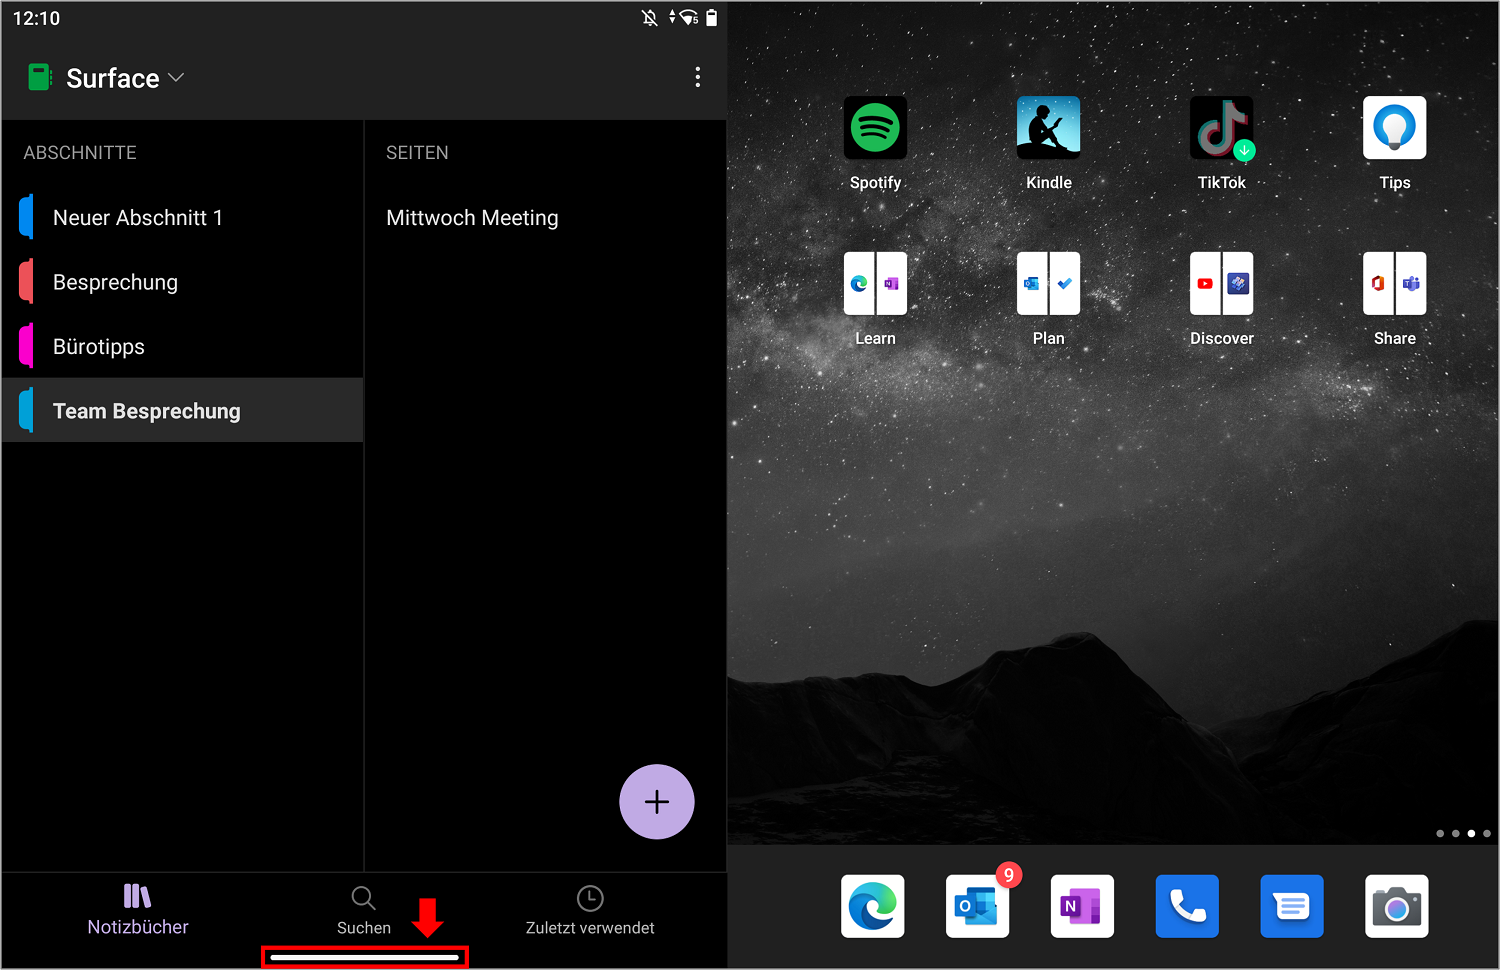 Beim Surface Duo können Sie eine App schließen, indem Sie den unteren, weißen Balken gedrückt halten und nach oben schieben.